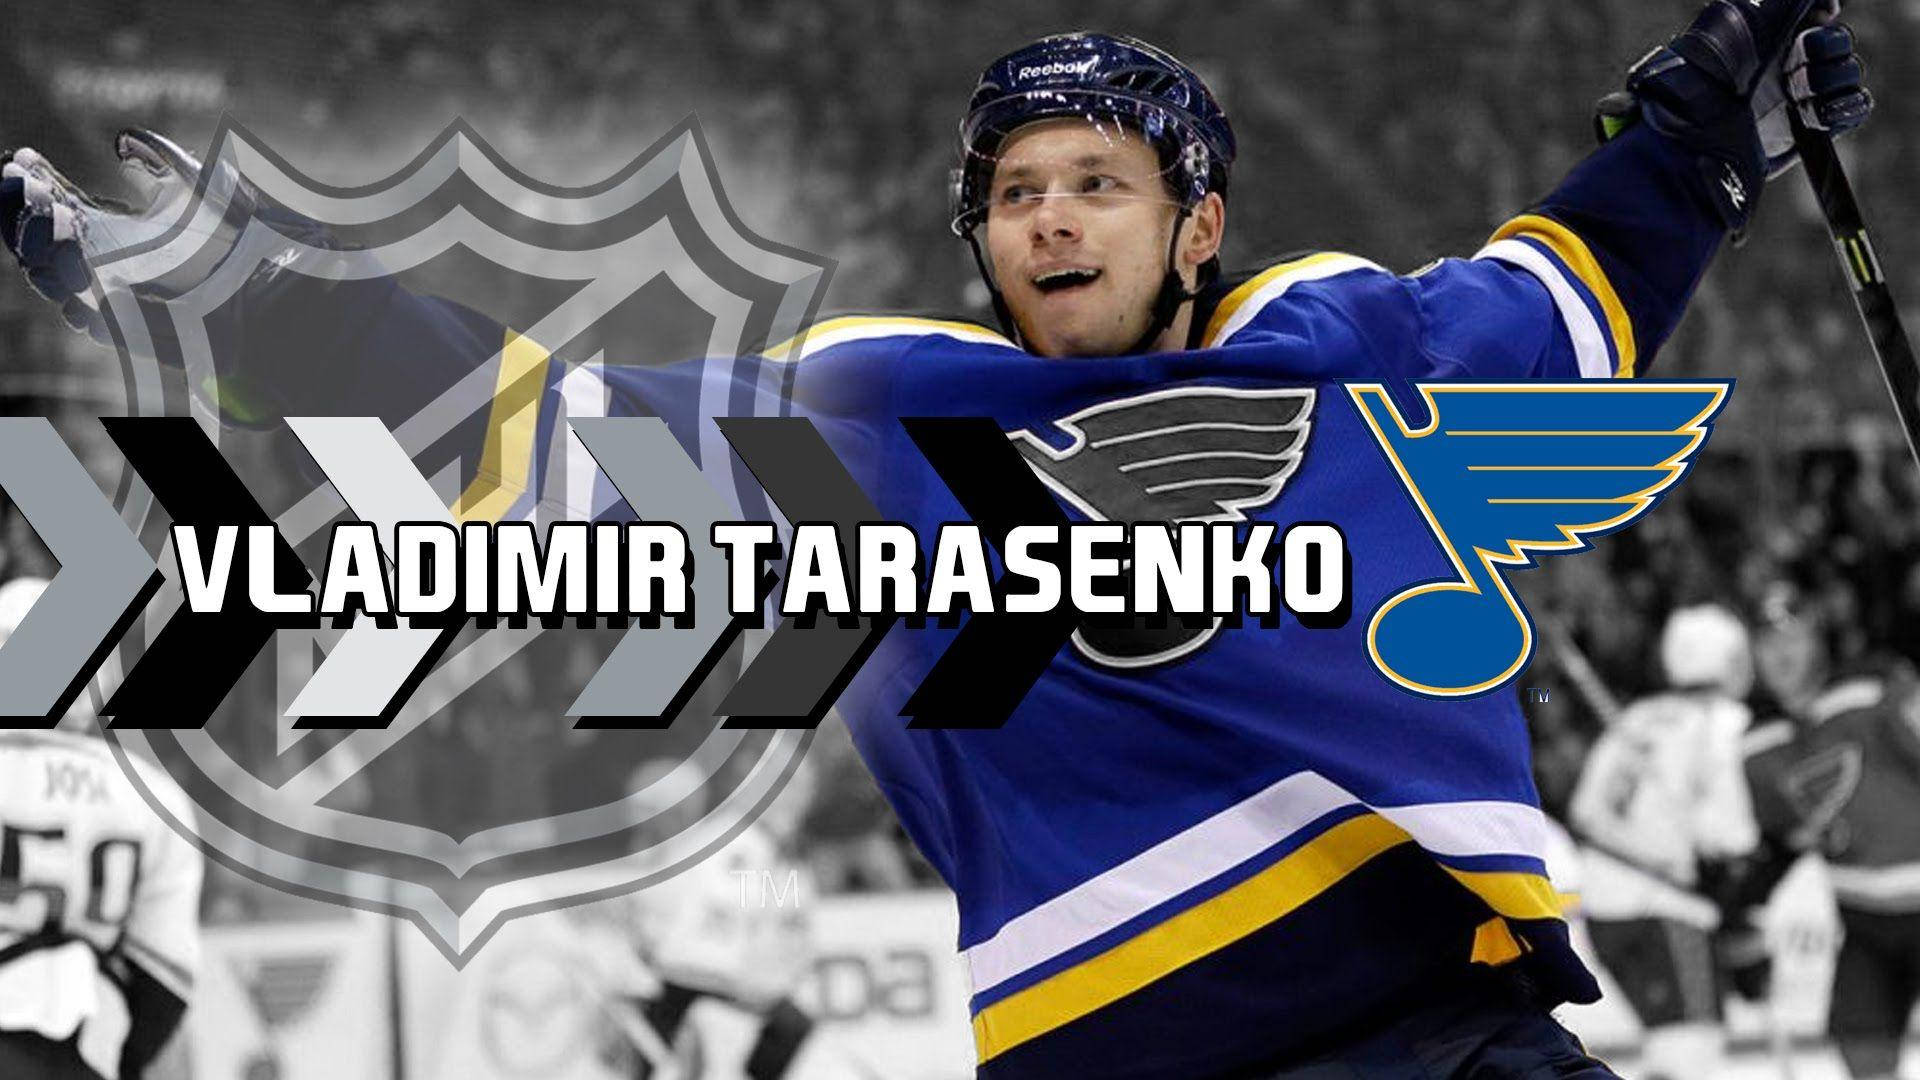 Vladimir Tarasenko smiler med arme i vejret og med NHL-logo og fuldt navn. Wallpaper